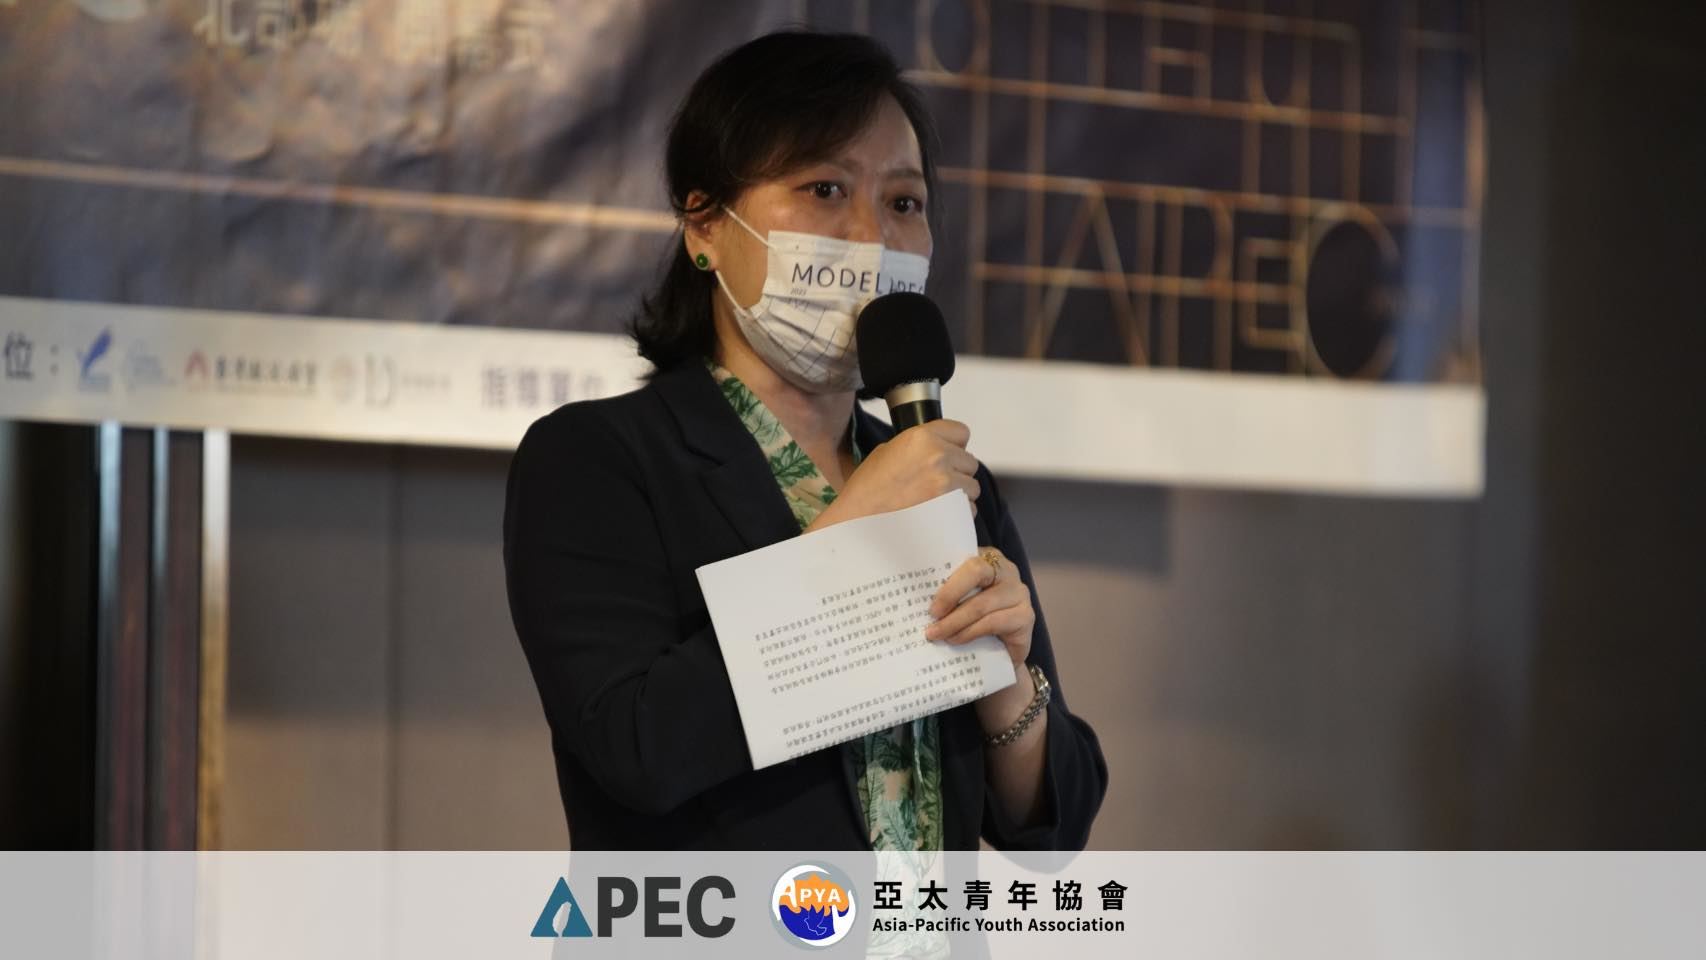 本會王執行長雪虹出席亞太青年協會舉辦的「2022 Model APEC Taiwan」開幕致詞